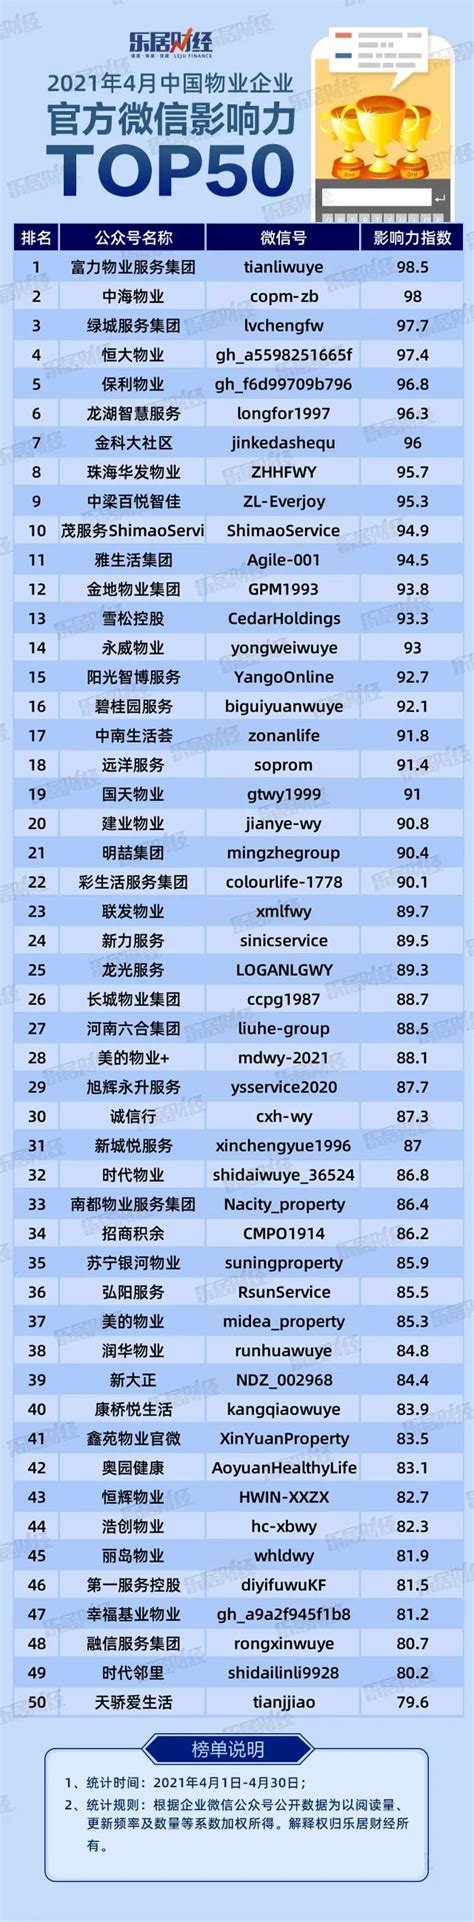 2021年4月中国物业企业官方微信影响力TOP50_物业新闻网